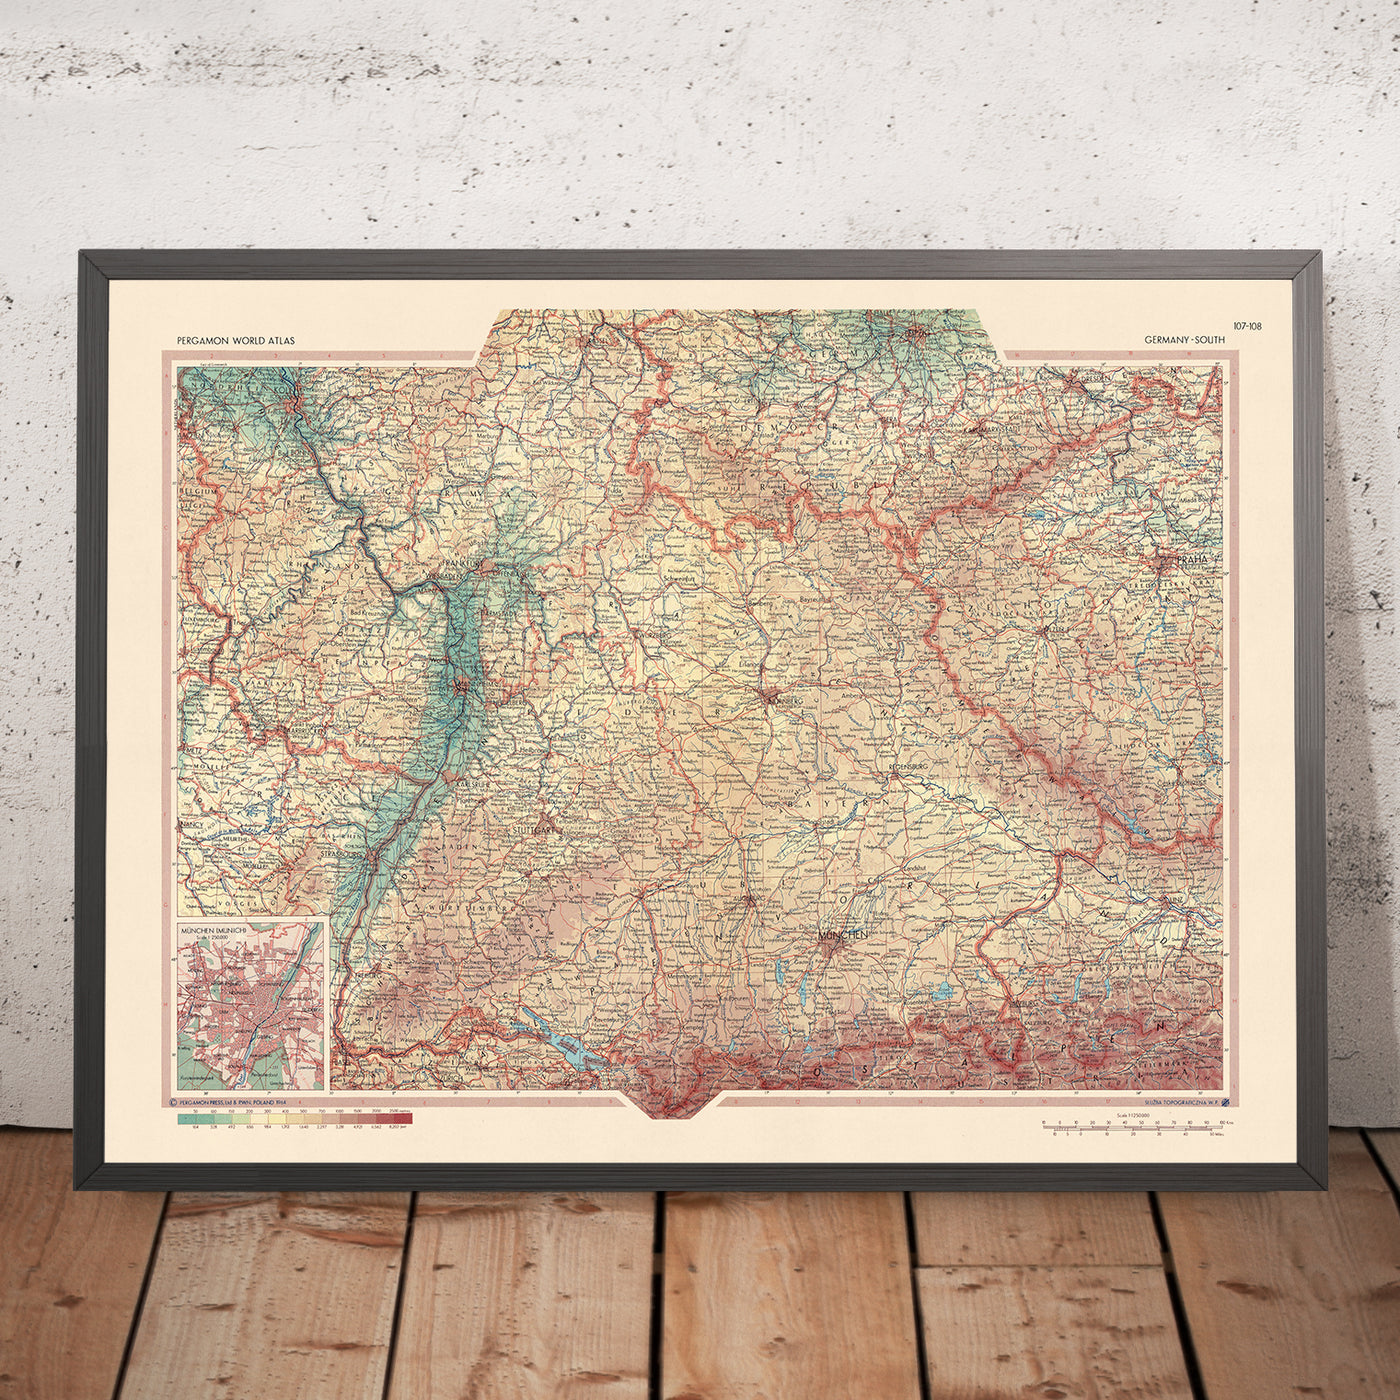 Alte Karte von Süddeutschland des Polnischen Armee-Topographiedienstes, 1967: Rheinland-Pfalz, Baden-Württemberg, Thüringen, Hessen, Bayern